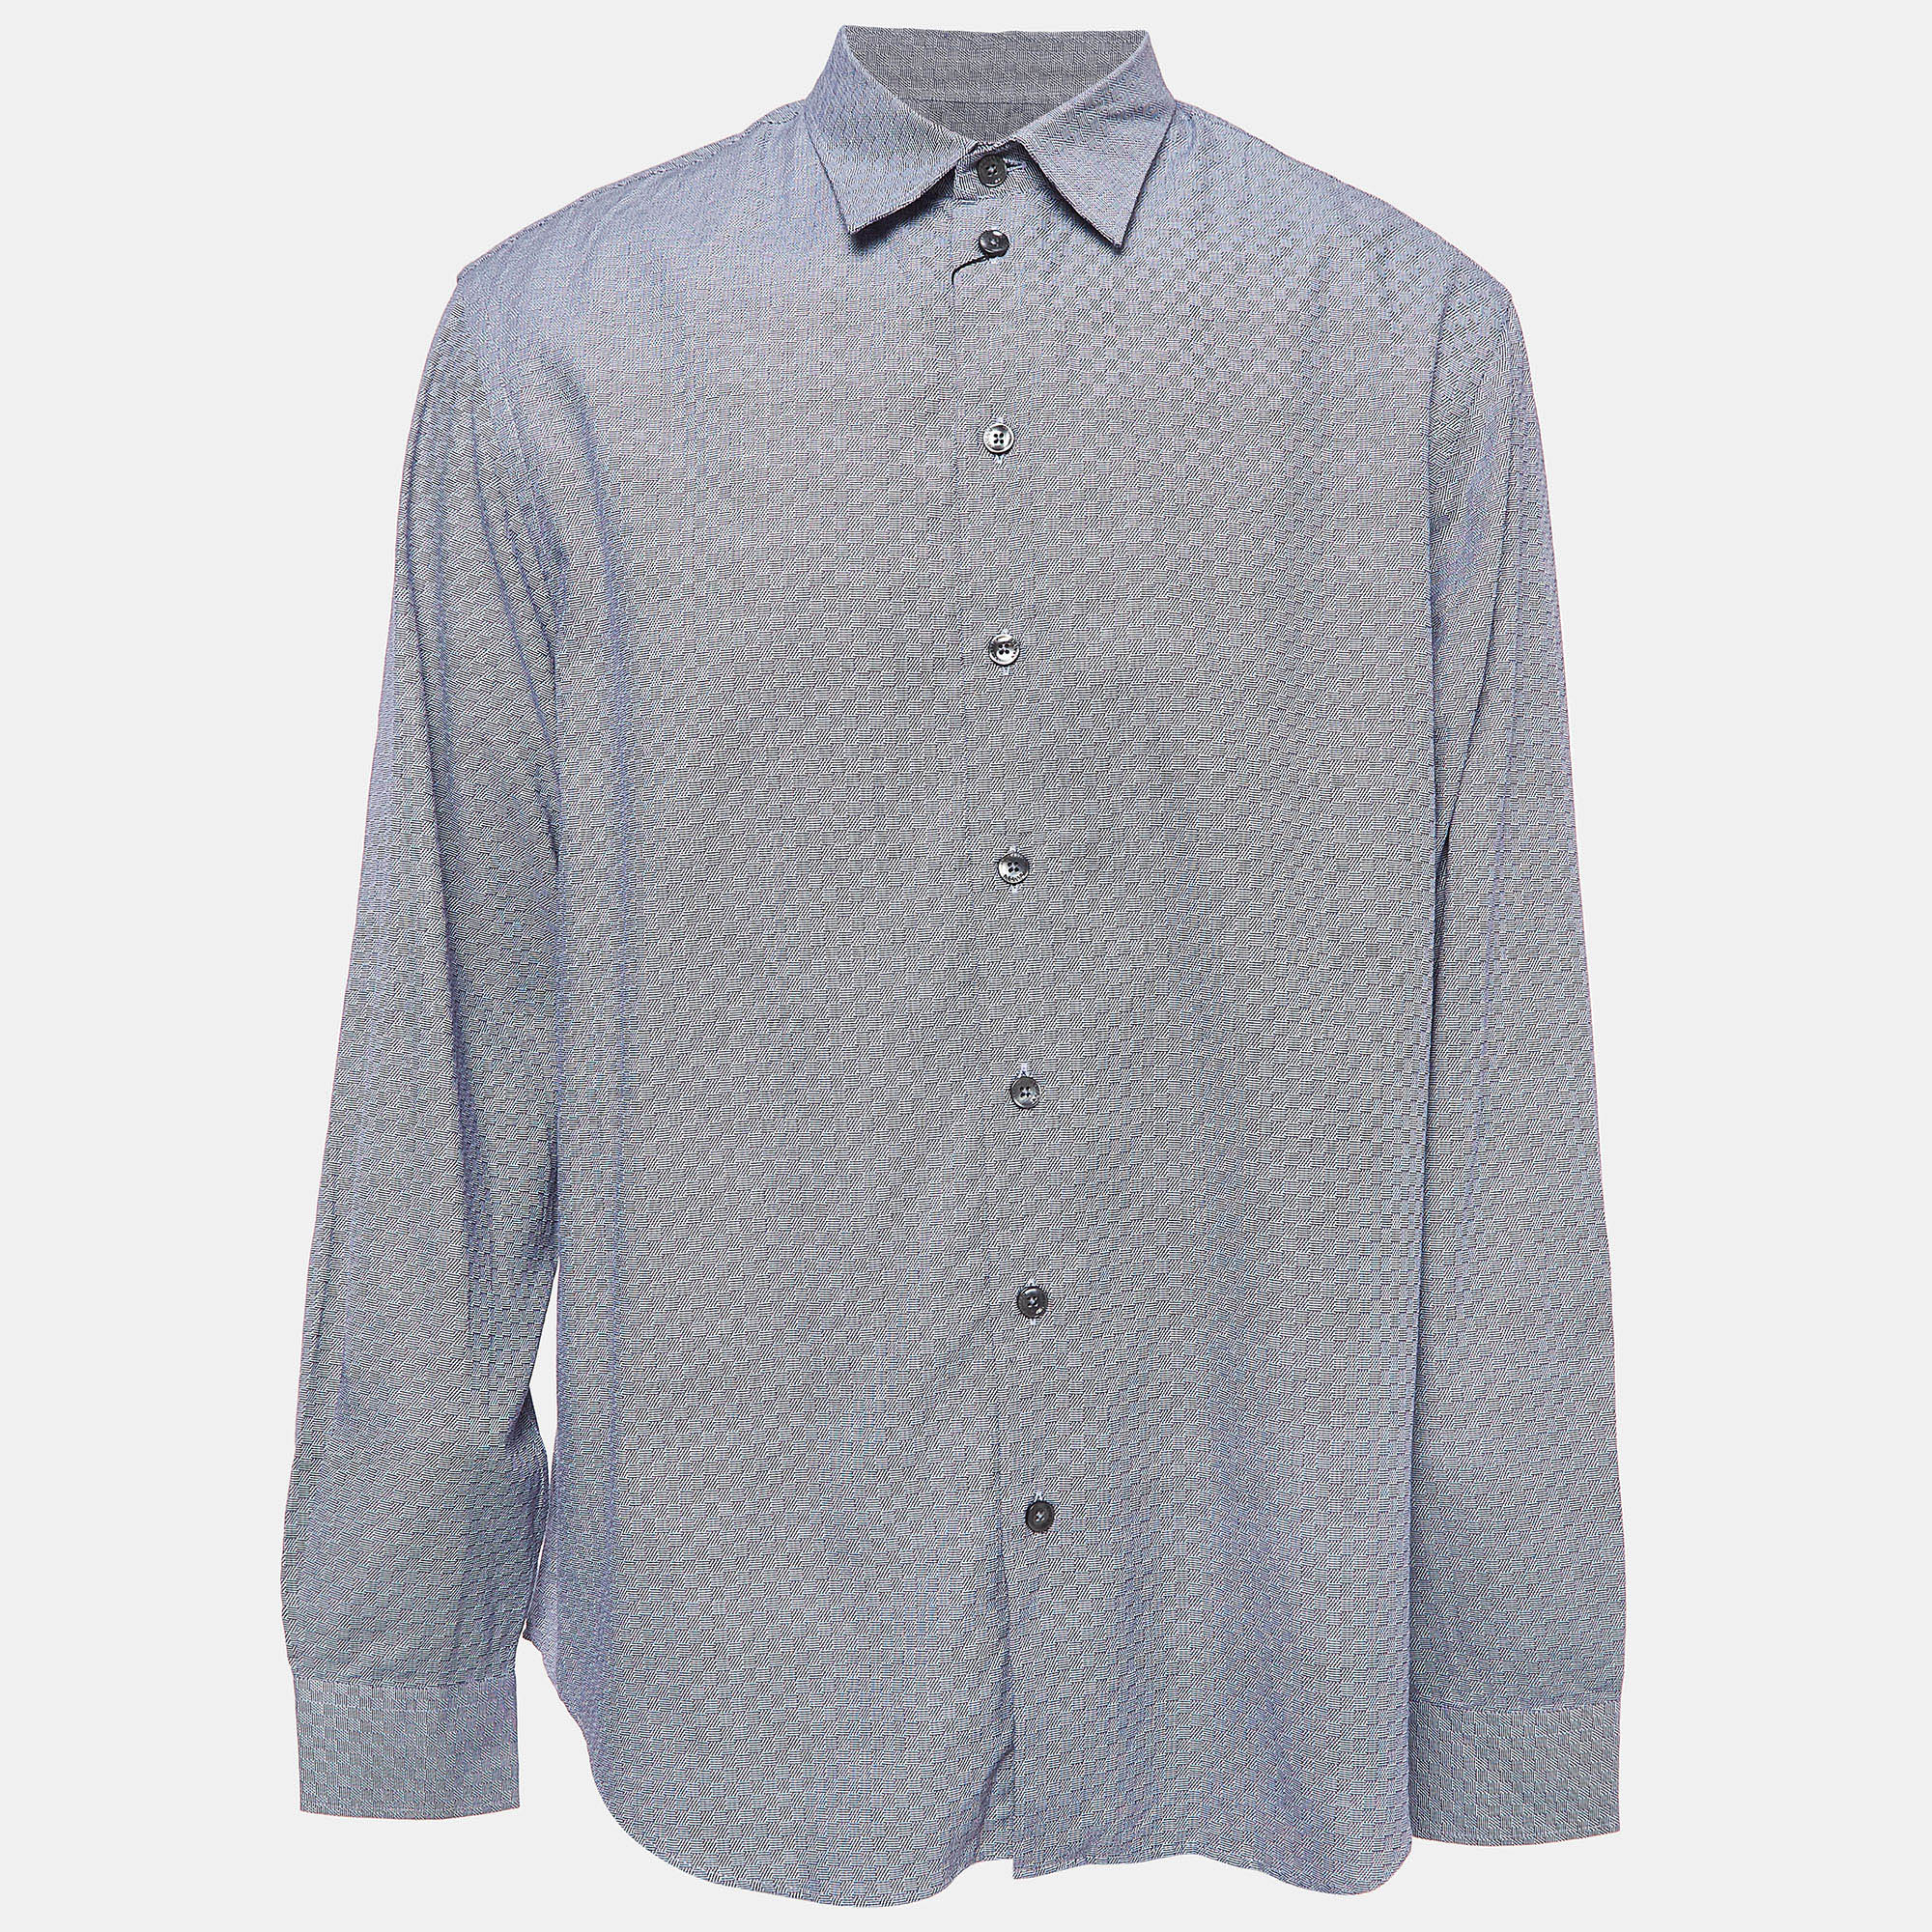 Armani collezioni blue cotton long sleeve button front shirt xl